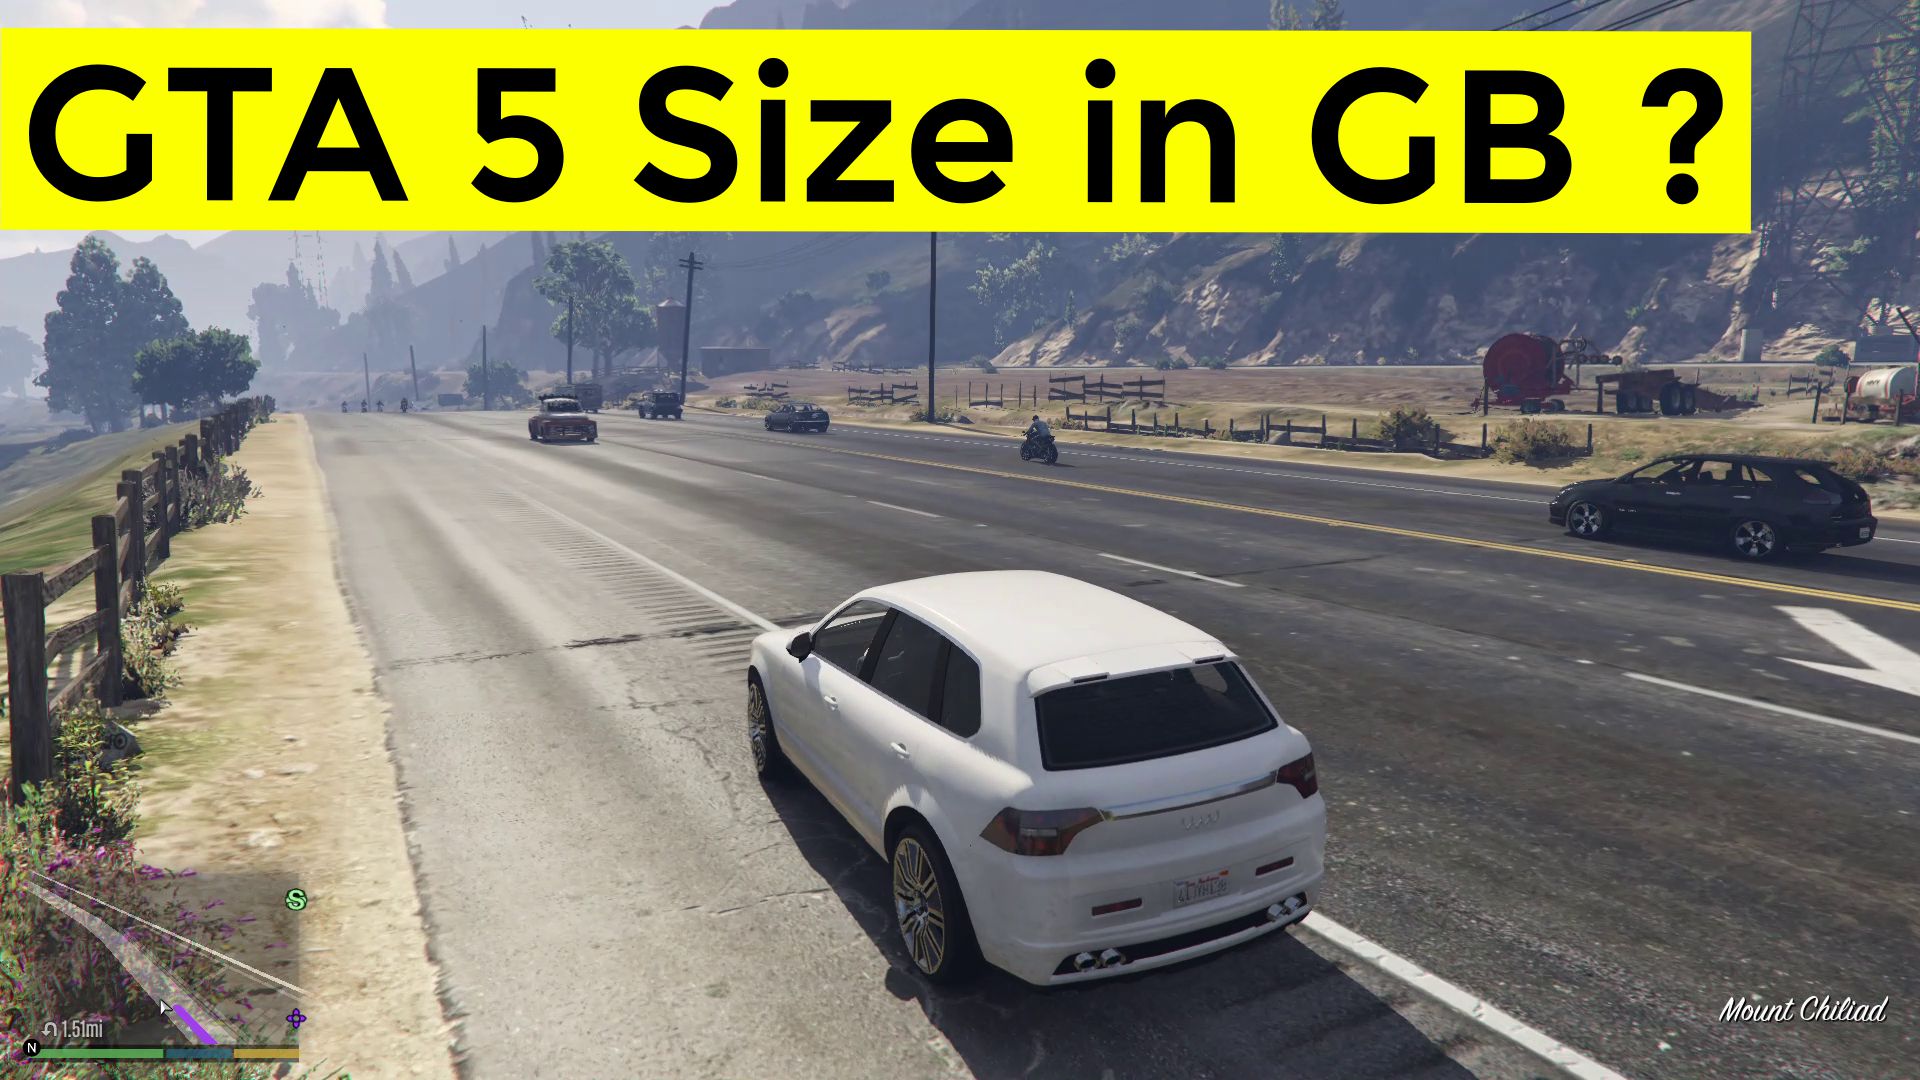 GTA 5 size in GB